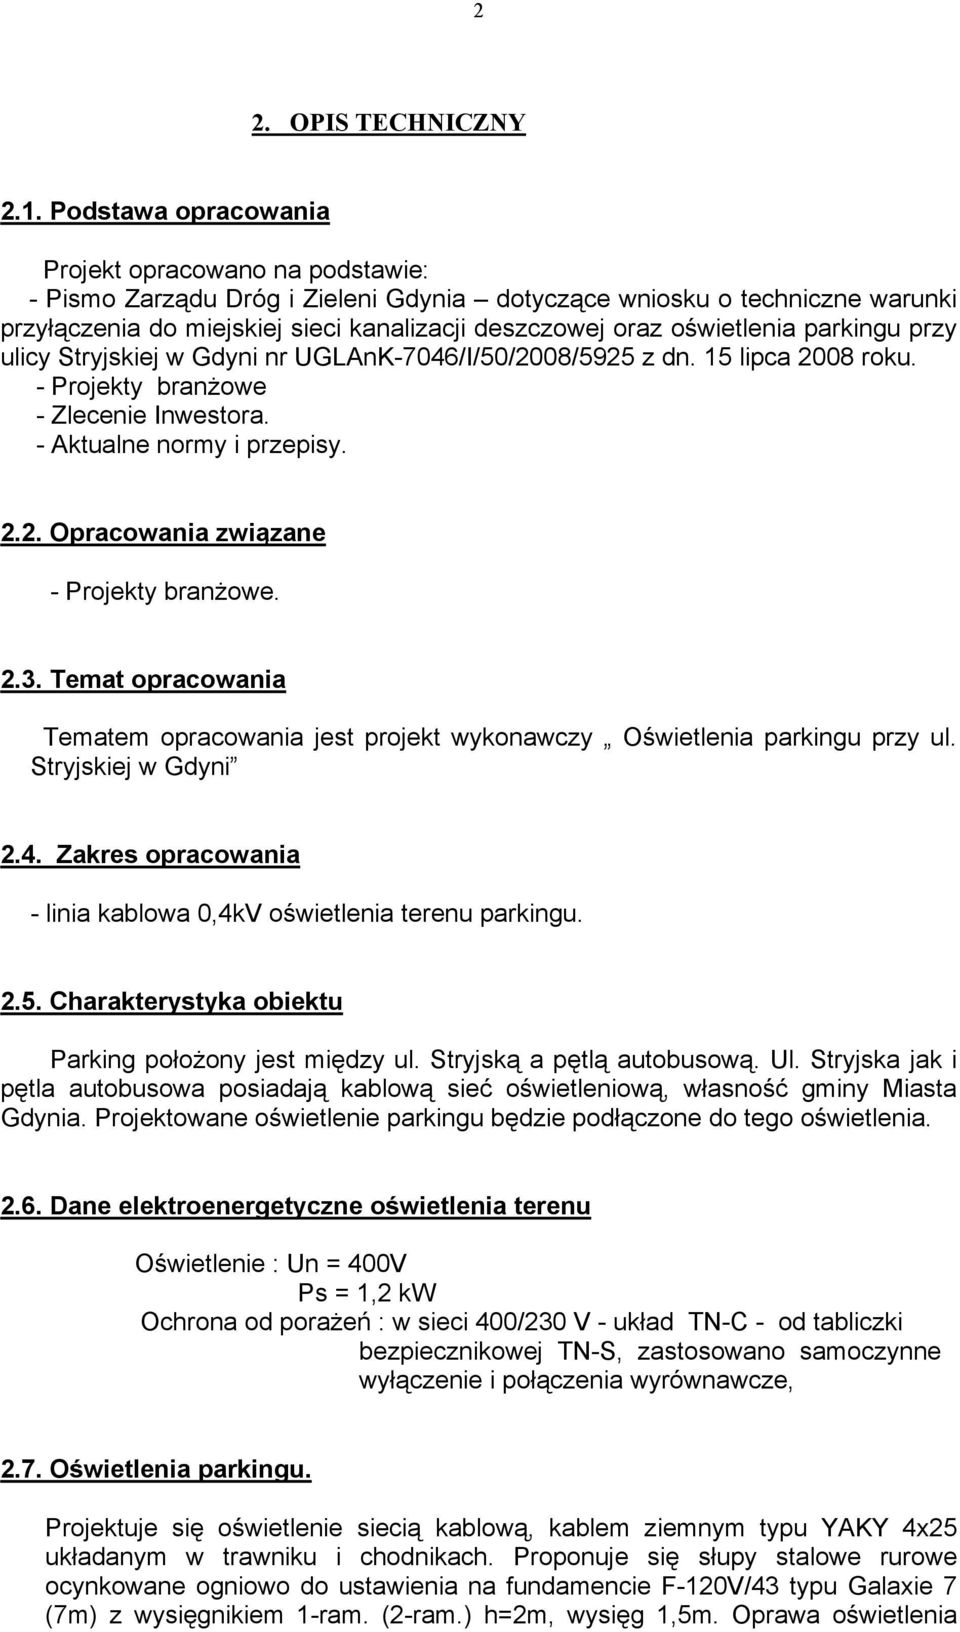 oświetlenia parkingu przy ulicy Stryjskiej w Gdyni nr UGLAnK-7046/I/50/2008/5925 z dn. 15 lipca 2008 roku. - Projekty branŝowe - Zlecenie Inwestora. - Aktualne normy i przepisy. 2.2. Opracowania związane - Projekty branŝowe.